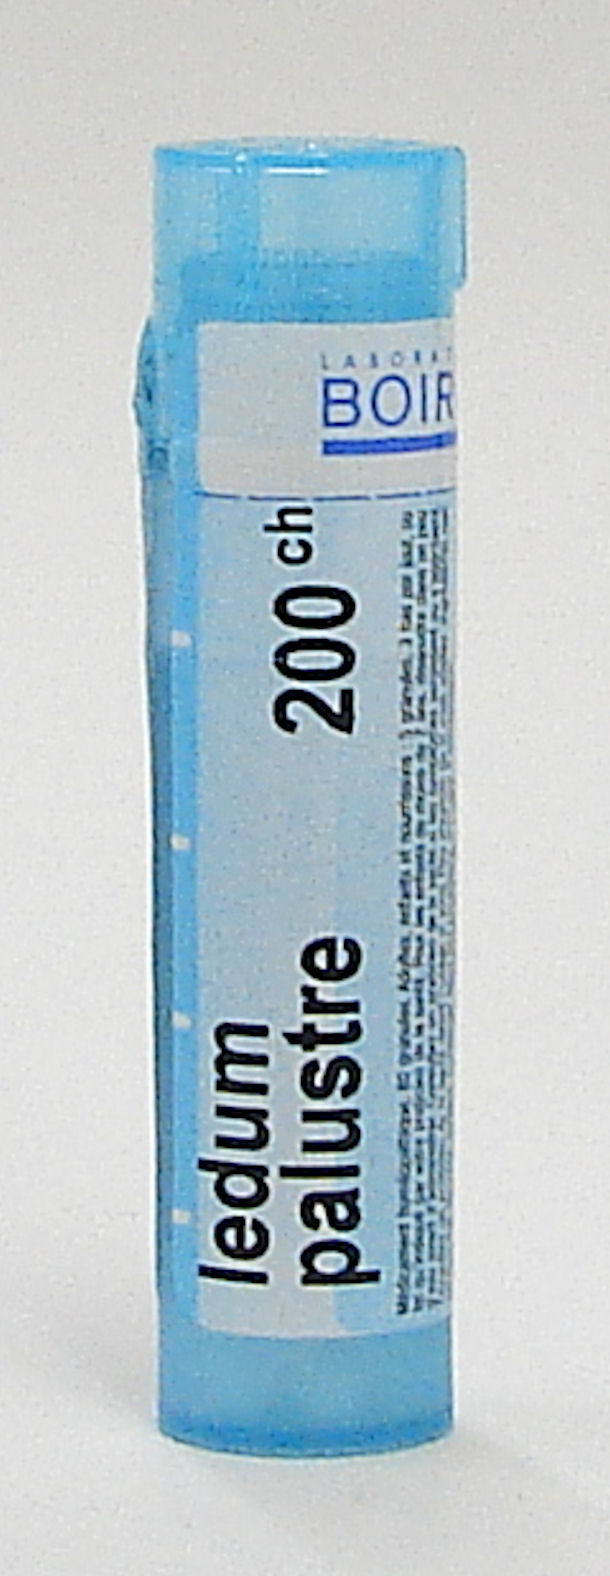 ledum palustre 200ch sublingual pellets (boiron)